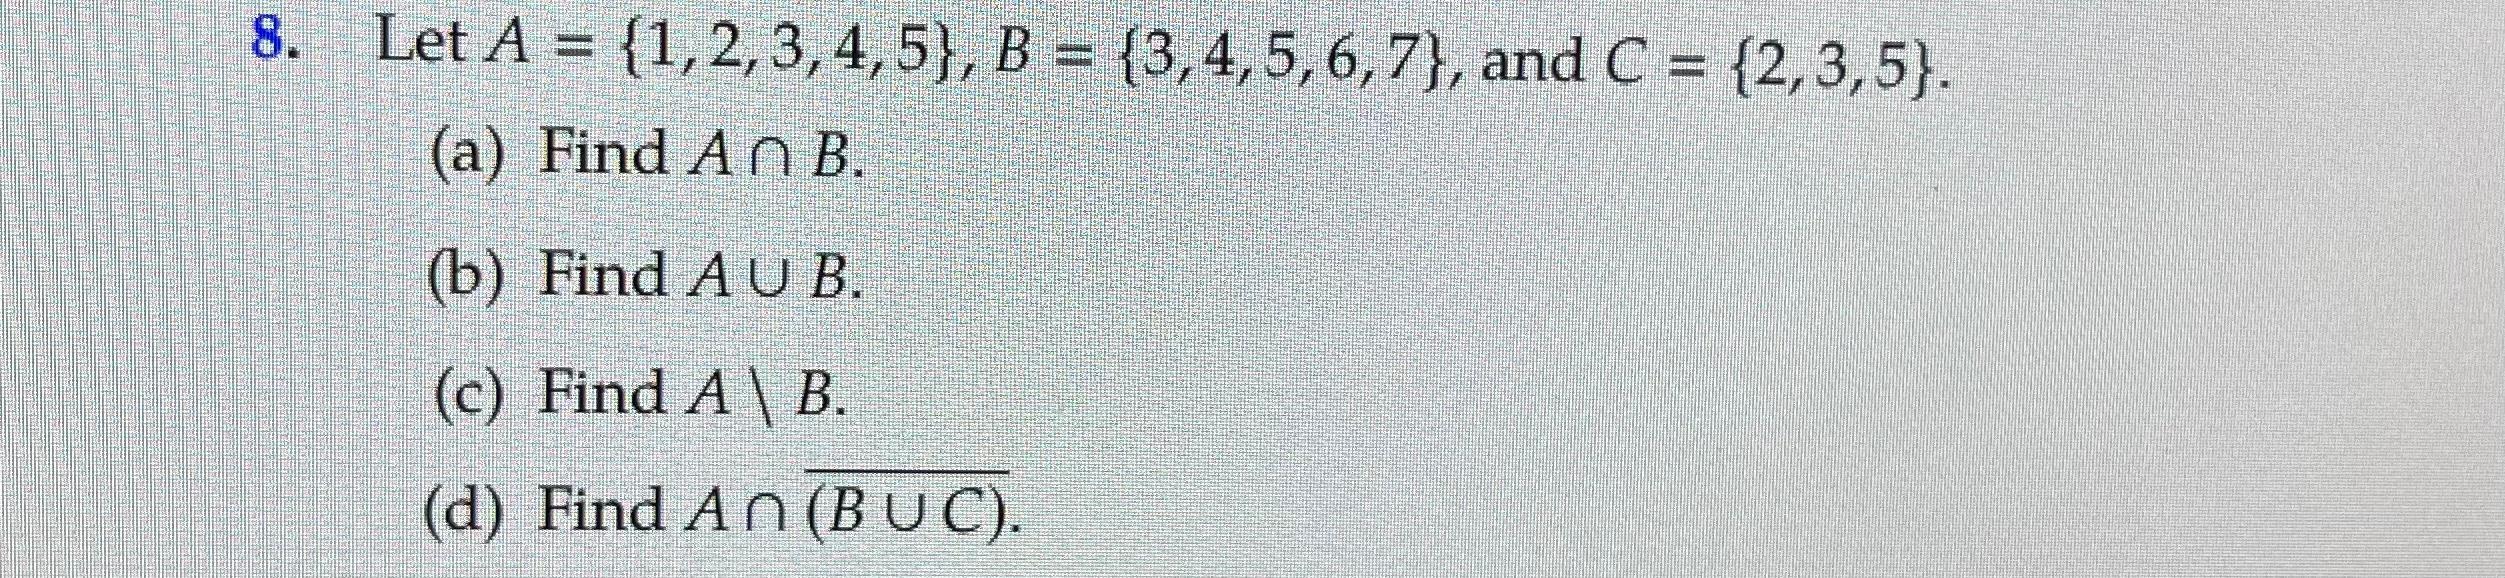 8. Let A = {1, 2, 3, 4, 5}, B = {3,4,5,6,7}, and C = {2,3,5). (a) Find An B. (b) Find A U B. (c) Find A B.